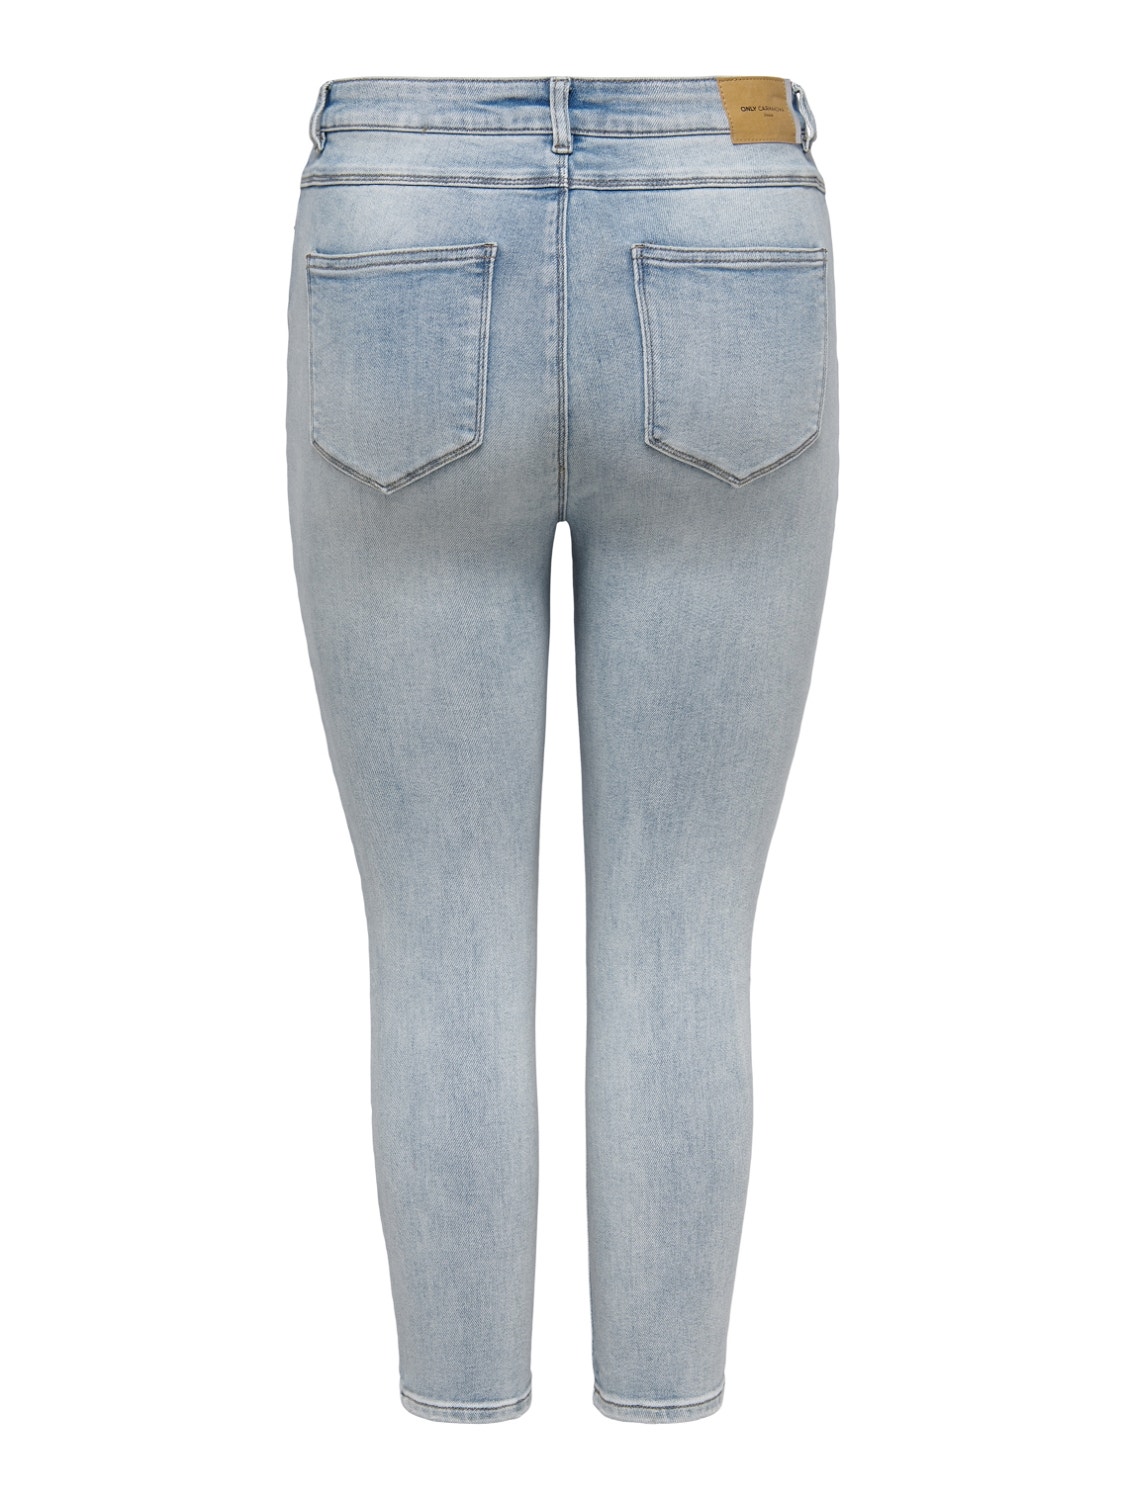 ONLY Skinny Fit Høy midje Curve Jeans -Light Blue Denim - 15260592